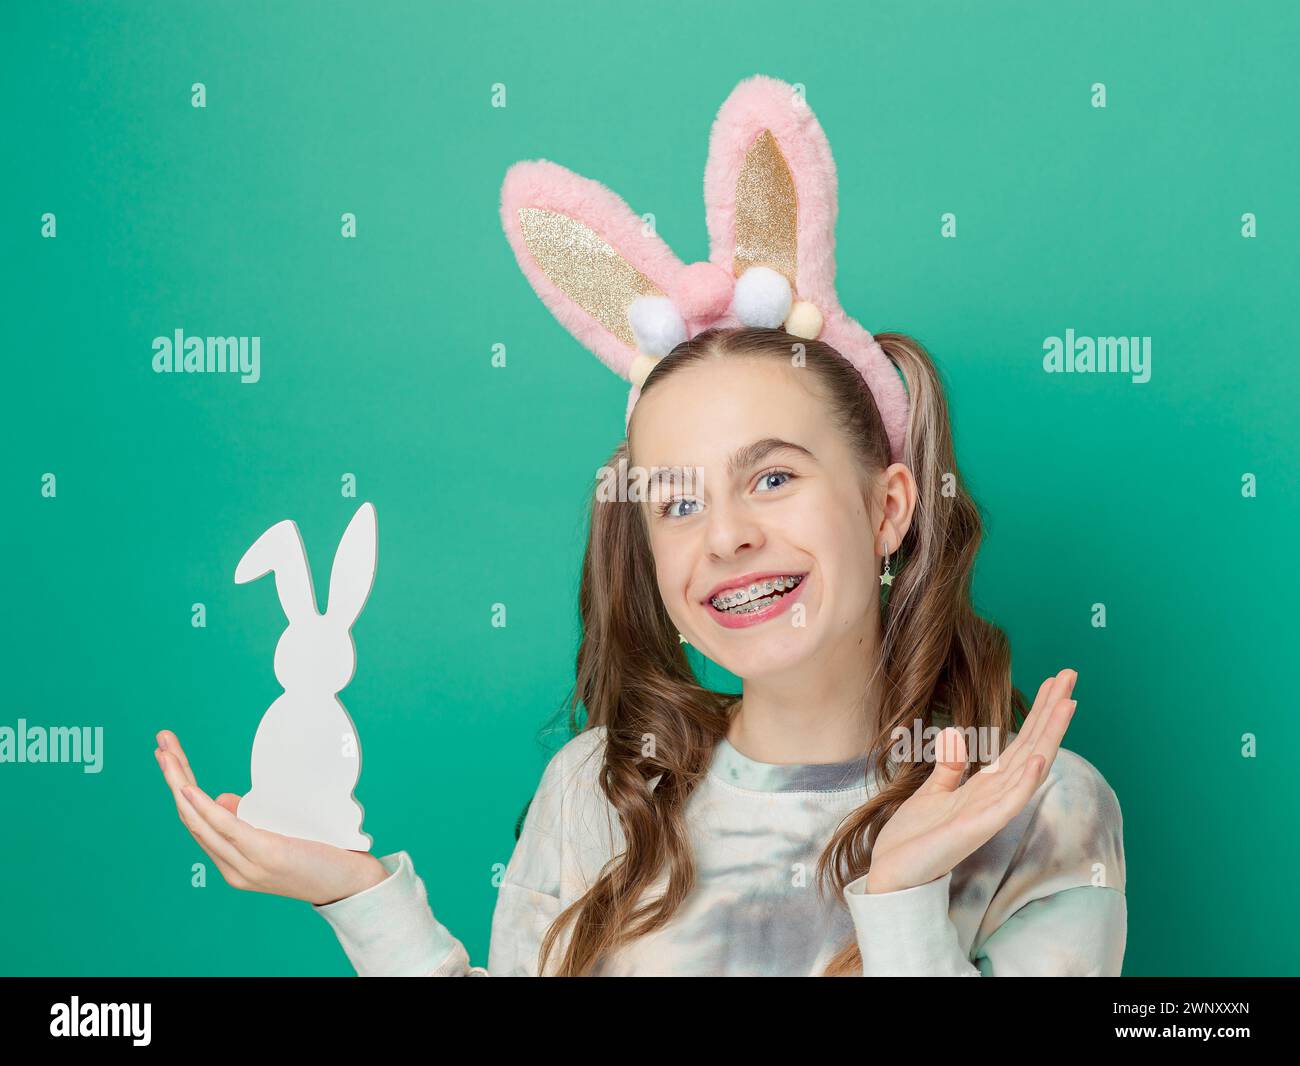 Joyeuses Pâques. Fille avec un sourire heureux, portant des oreilles de lapin rose brillantes et tenant une figurine de lapin en bois, fond bleu, rayonnant de plaisir de Pâques. Mignon smil Banque D'Images